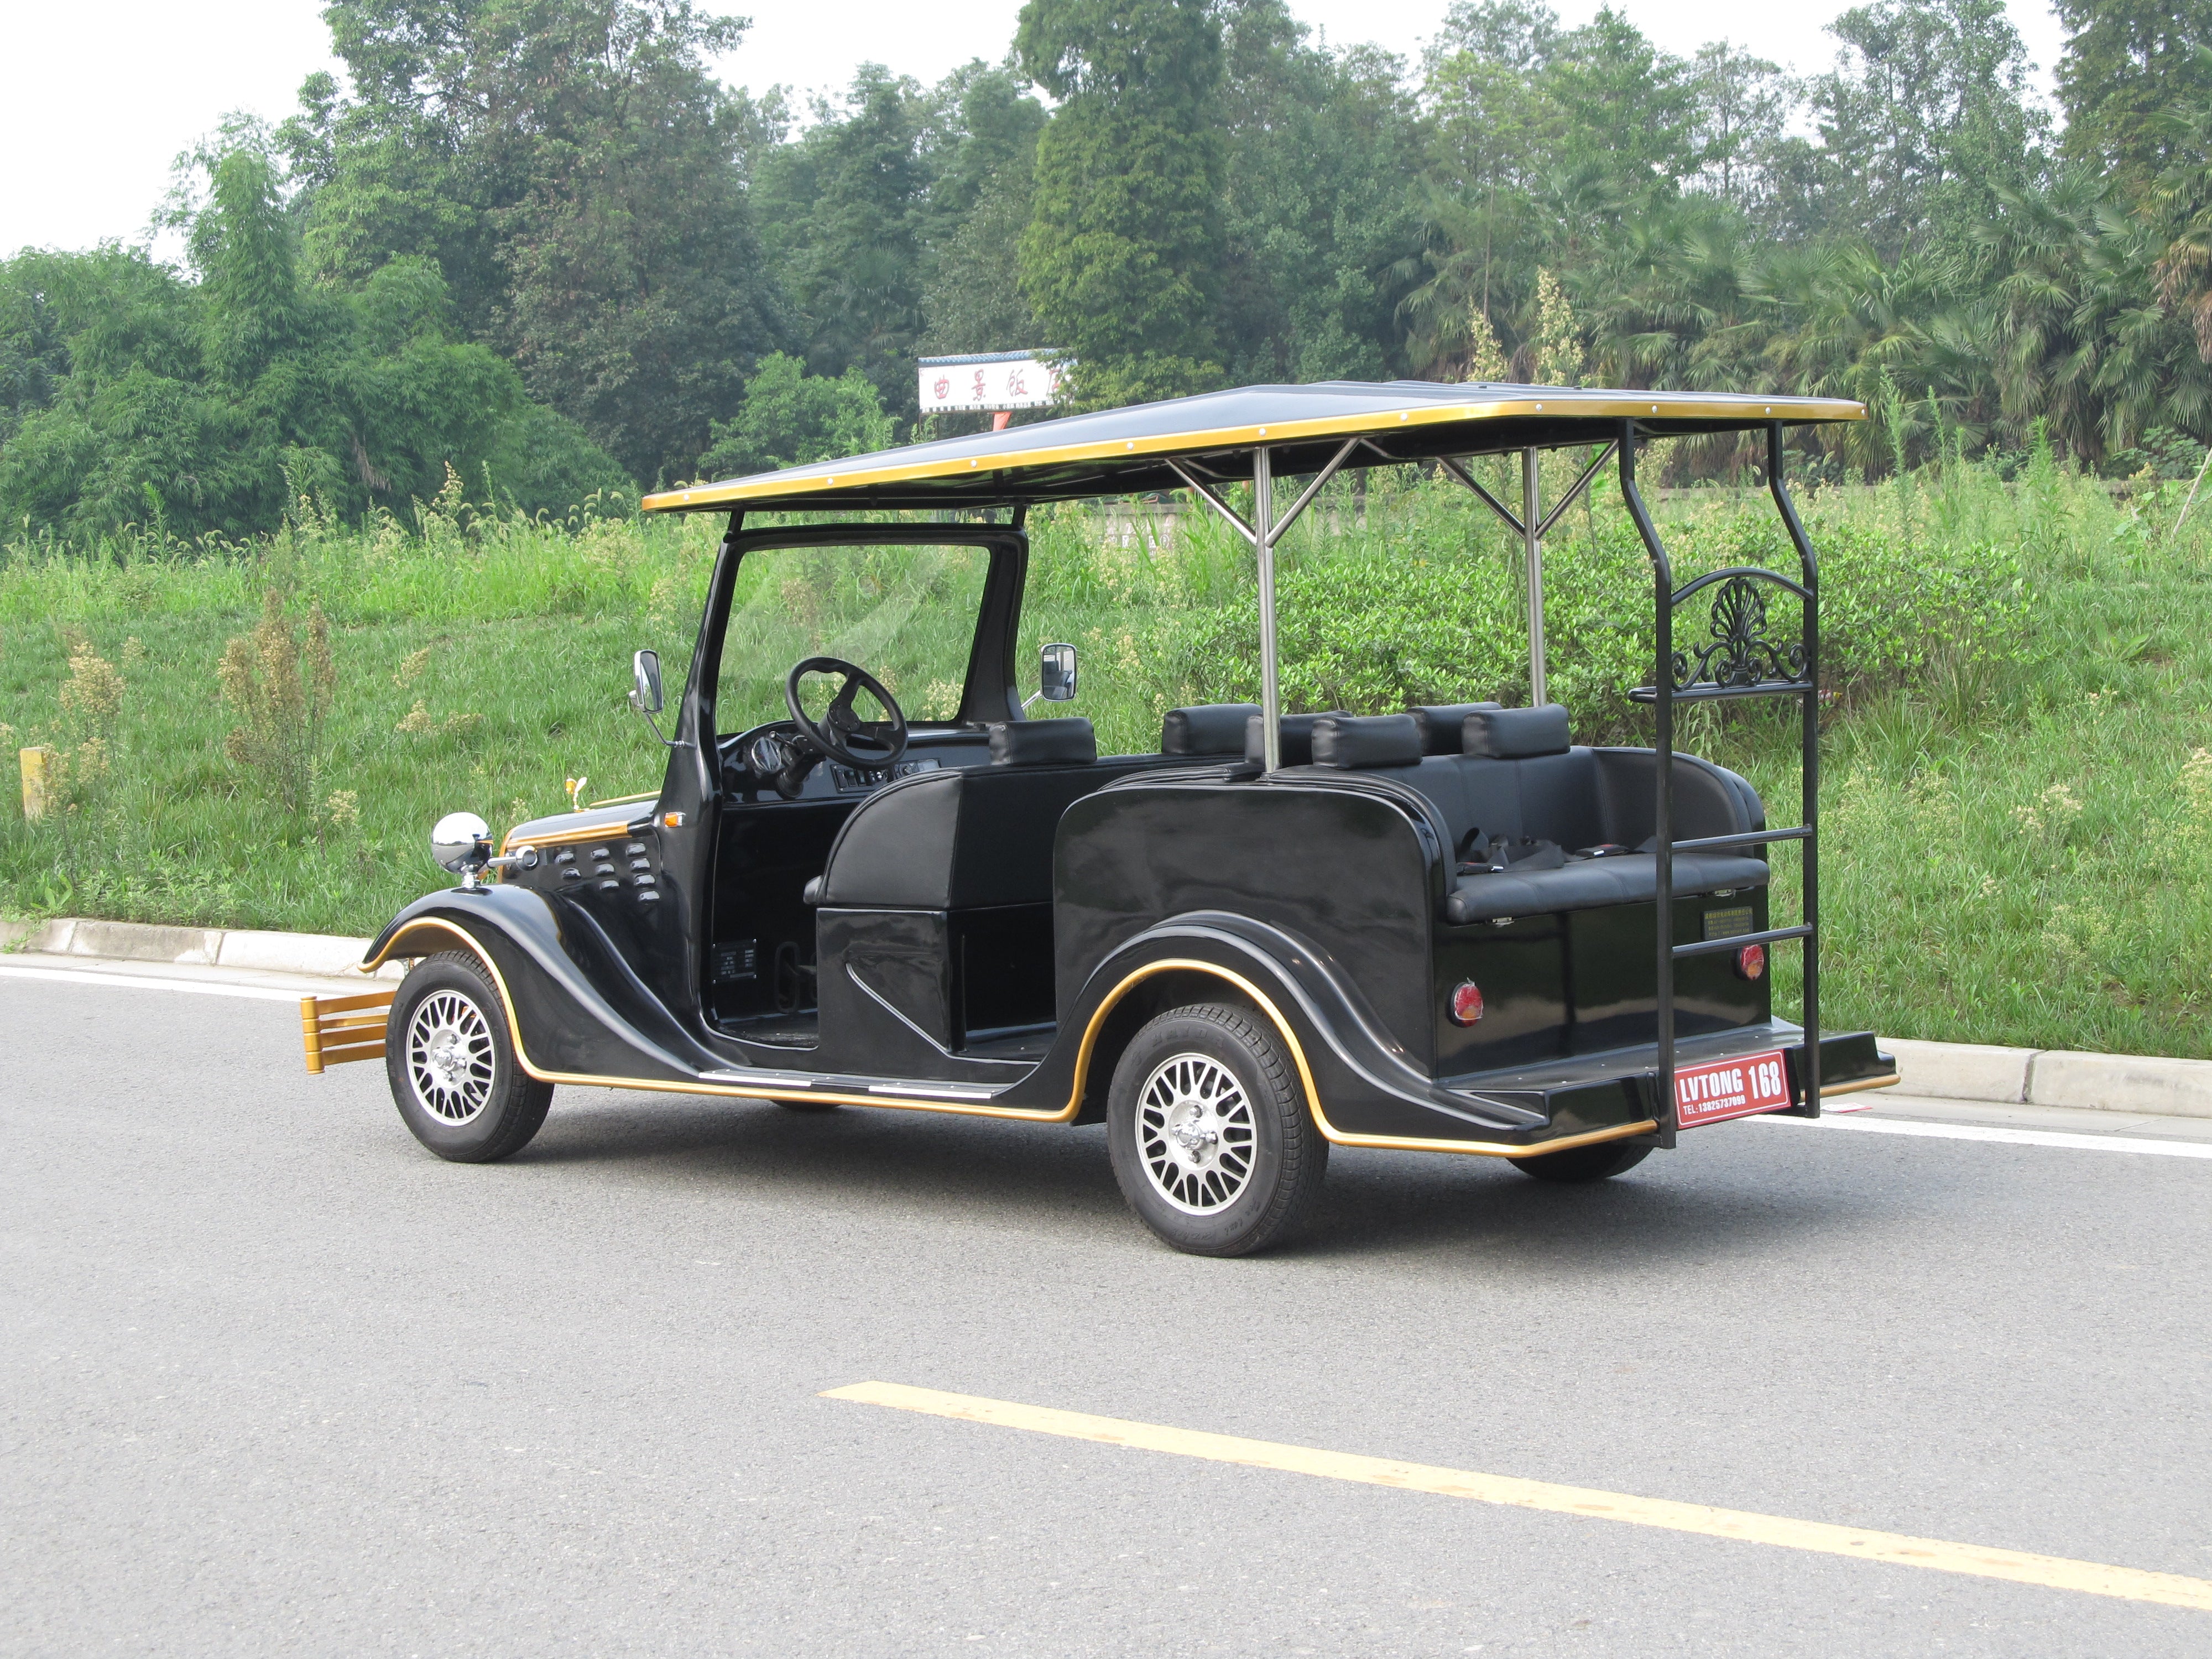 ECAR LT-S6.FB Classic 6 Seat – Classic Wedding Cart